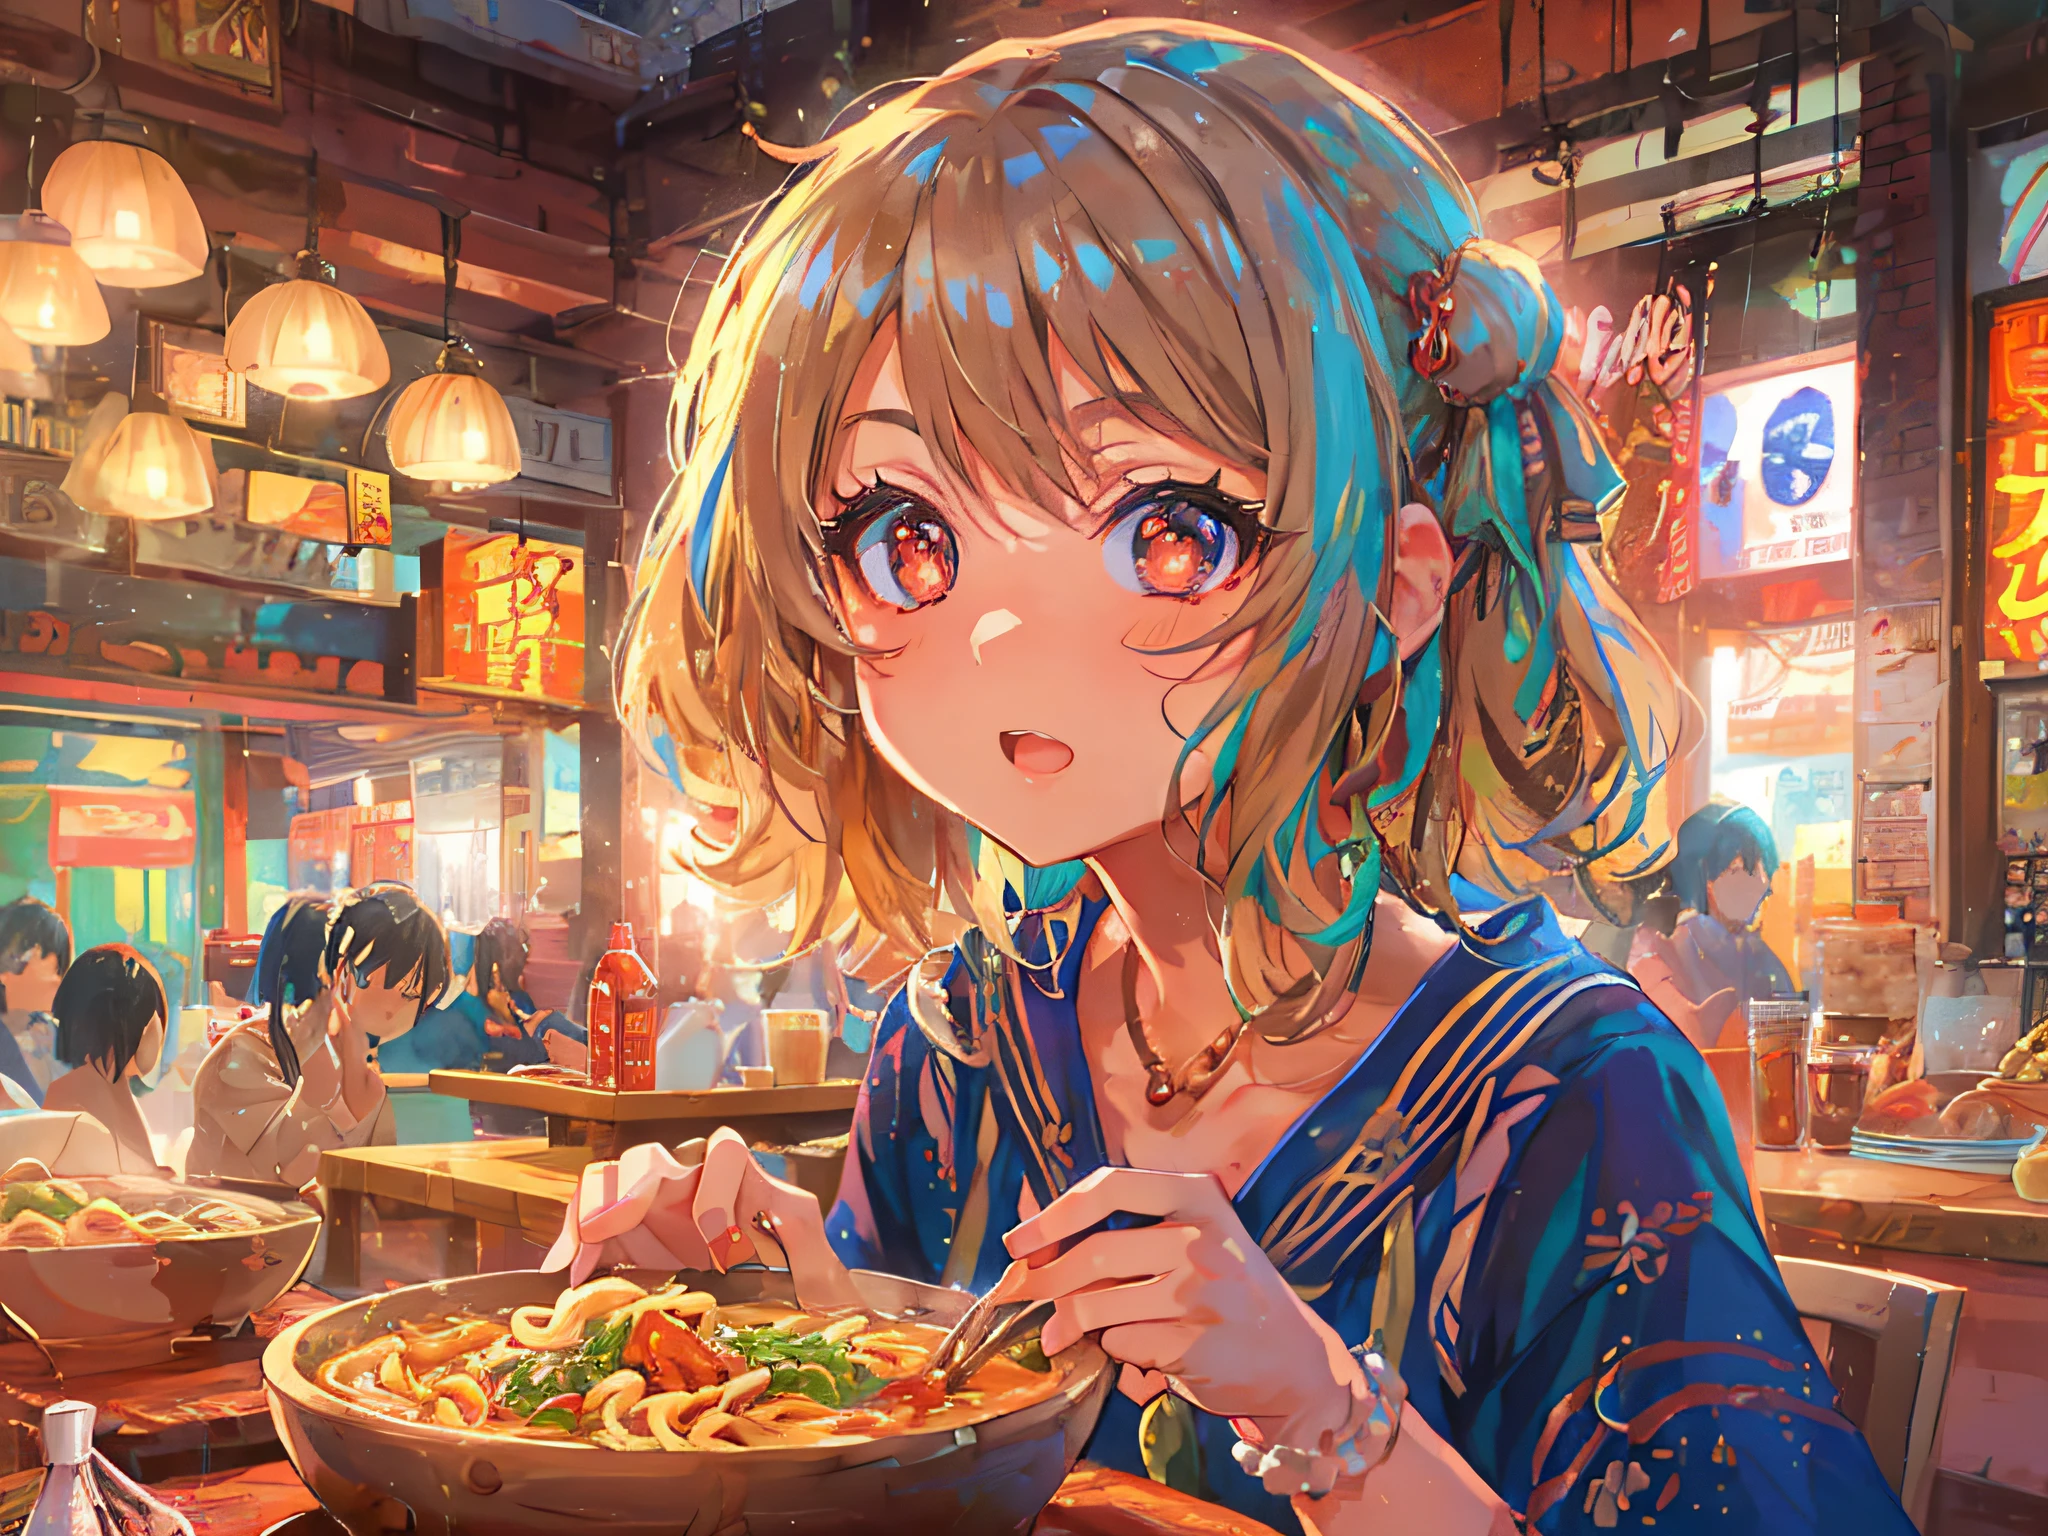 anime girl savourant un udon au curry, avec un style détaillé et réaliste, L&#39;éclairage doit être clair et joyeux, mettant en valeur l&#39;expression de contenu de la fille, Les couleurs doivent être vibrantes et attrayantes, avec le curry udon qui se démarque, Coup moyen, capturer la jeune fille dans son environnement de restauration